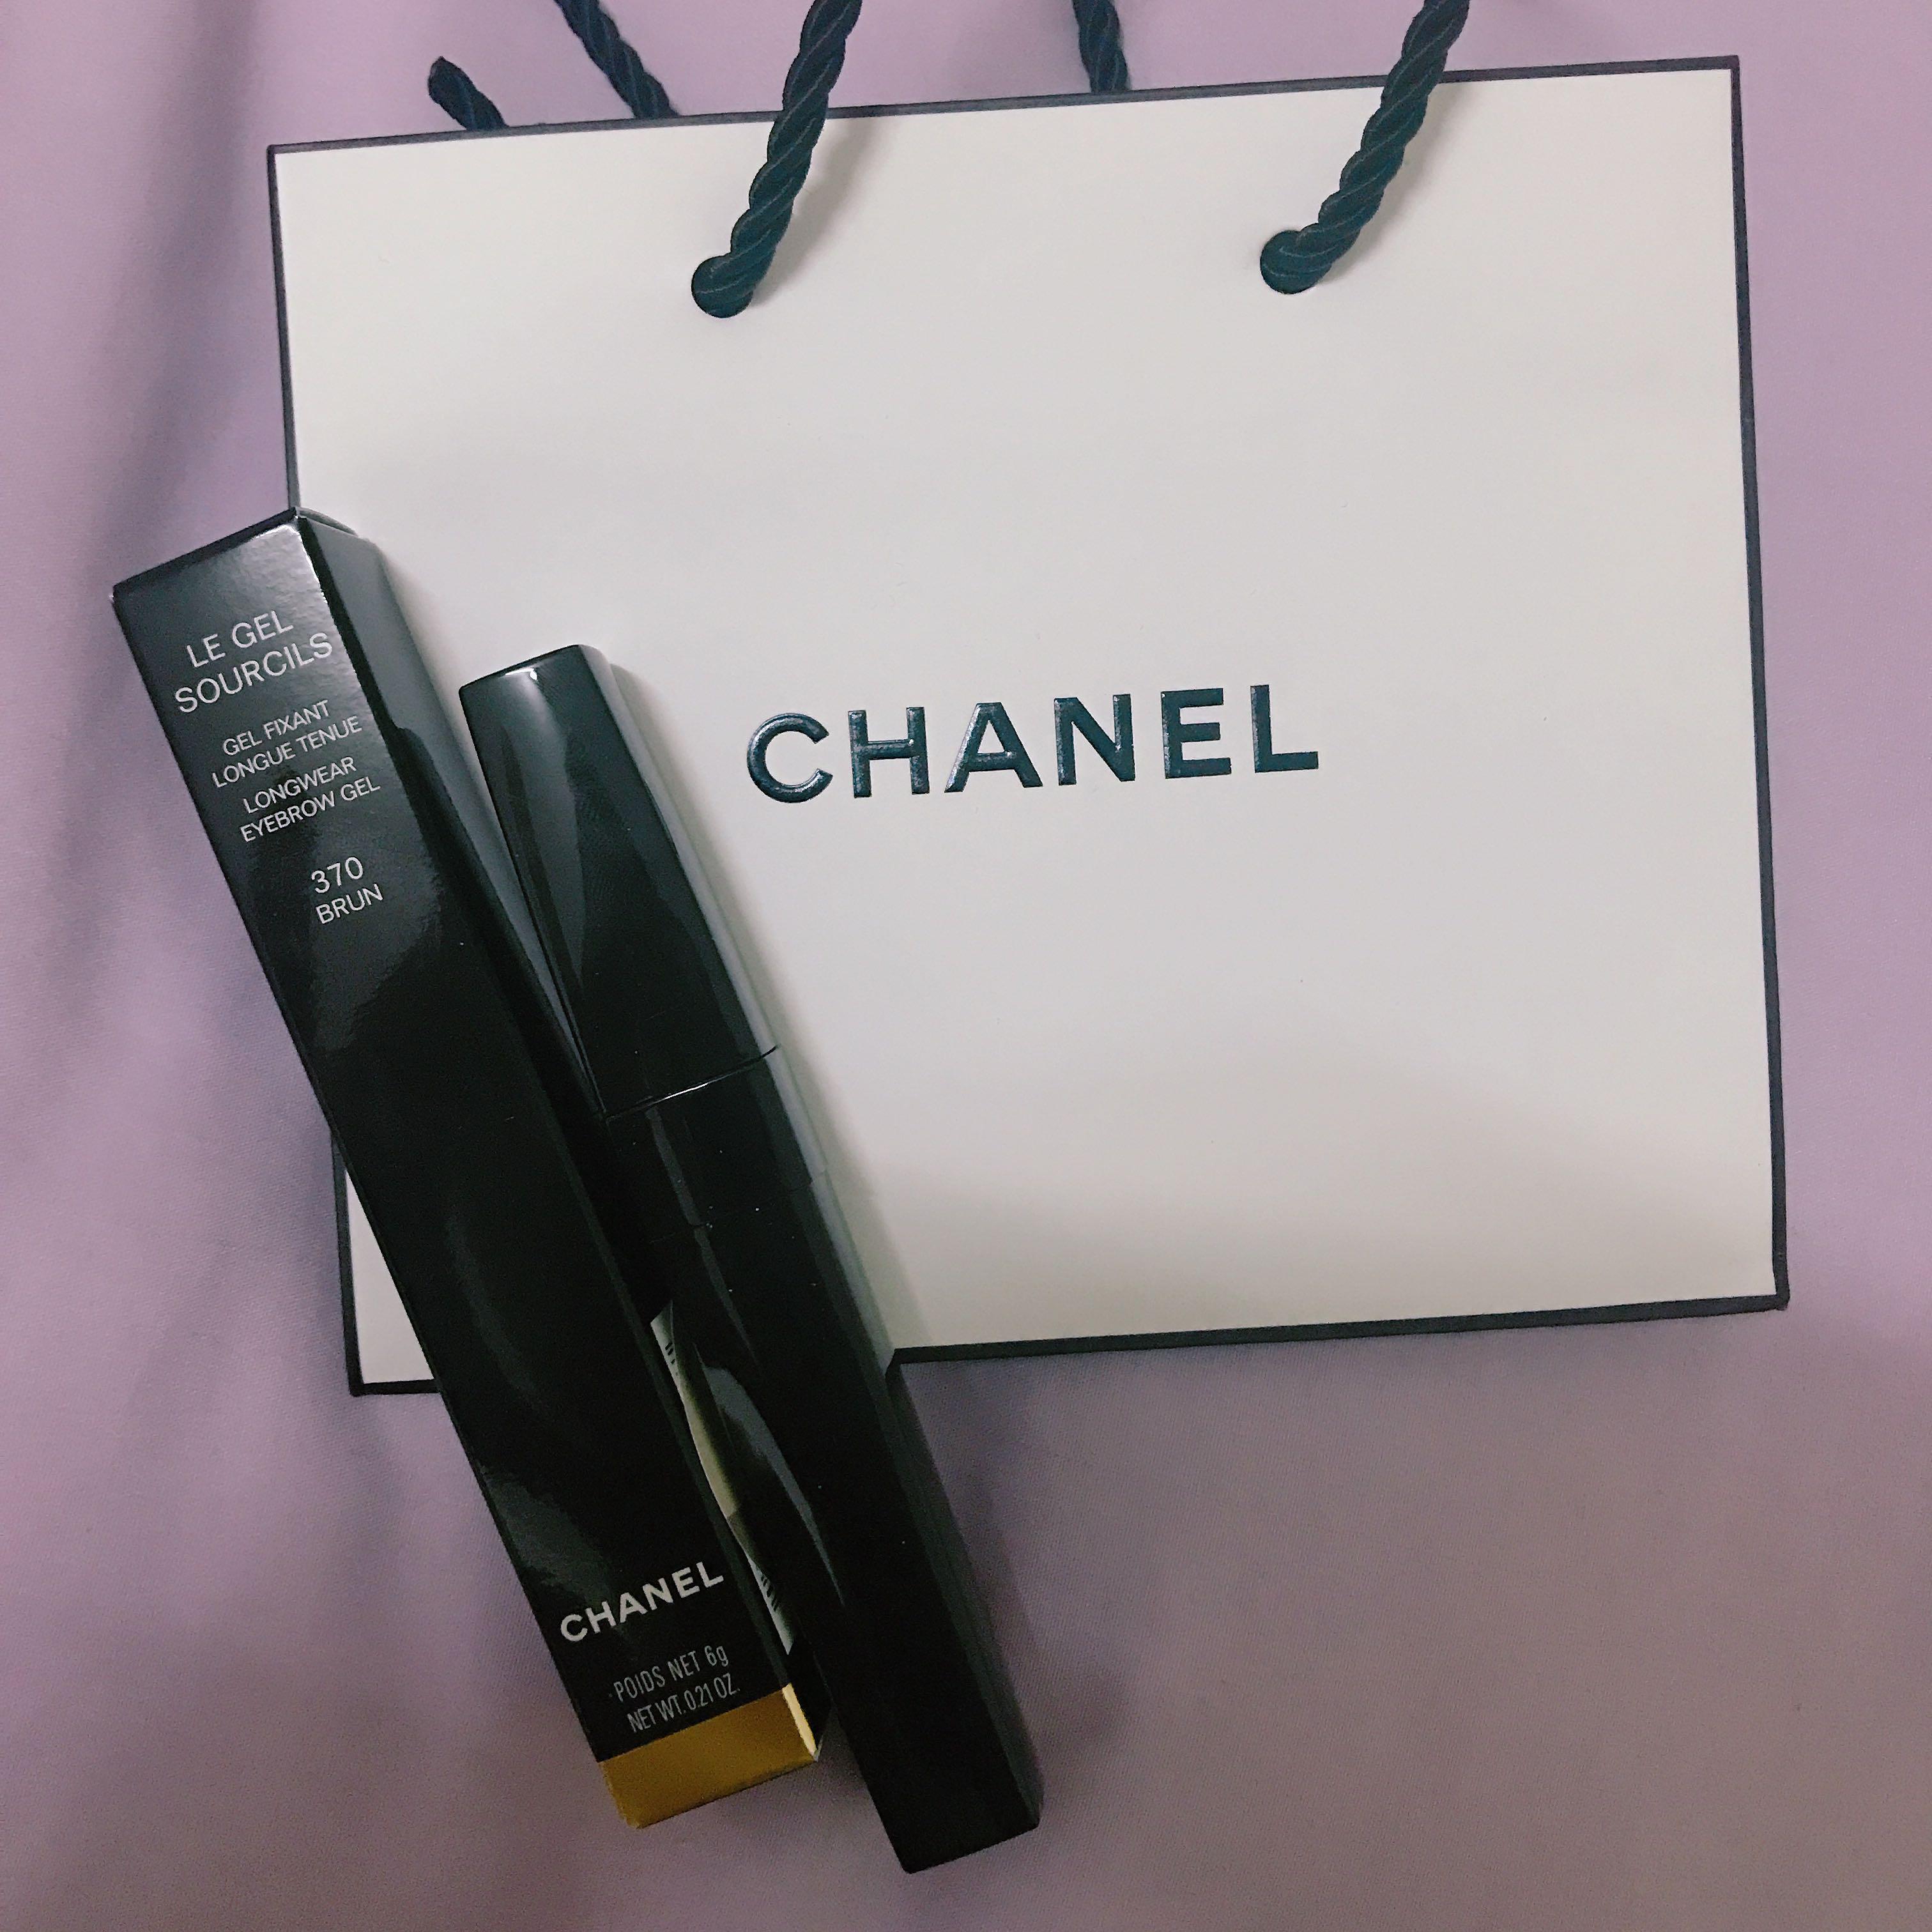 Chanel Le Gel Sourcils Longwear Eyebrow Gel buy to India.India